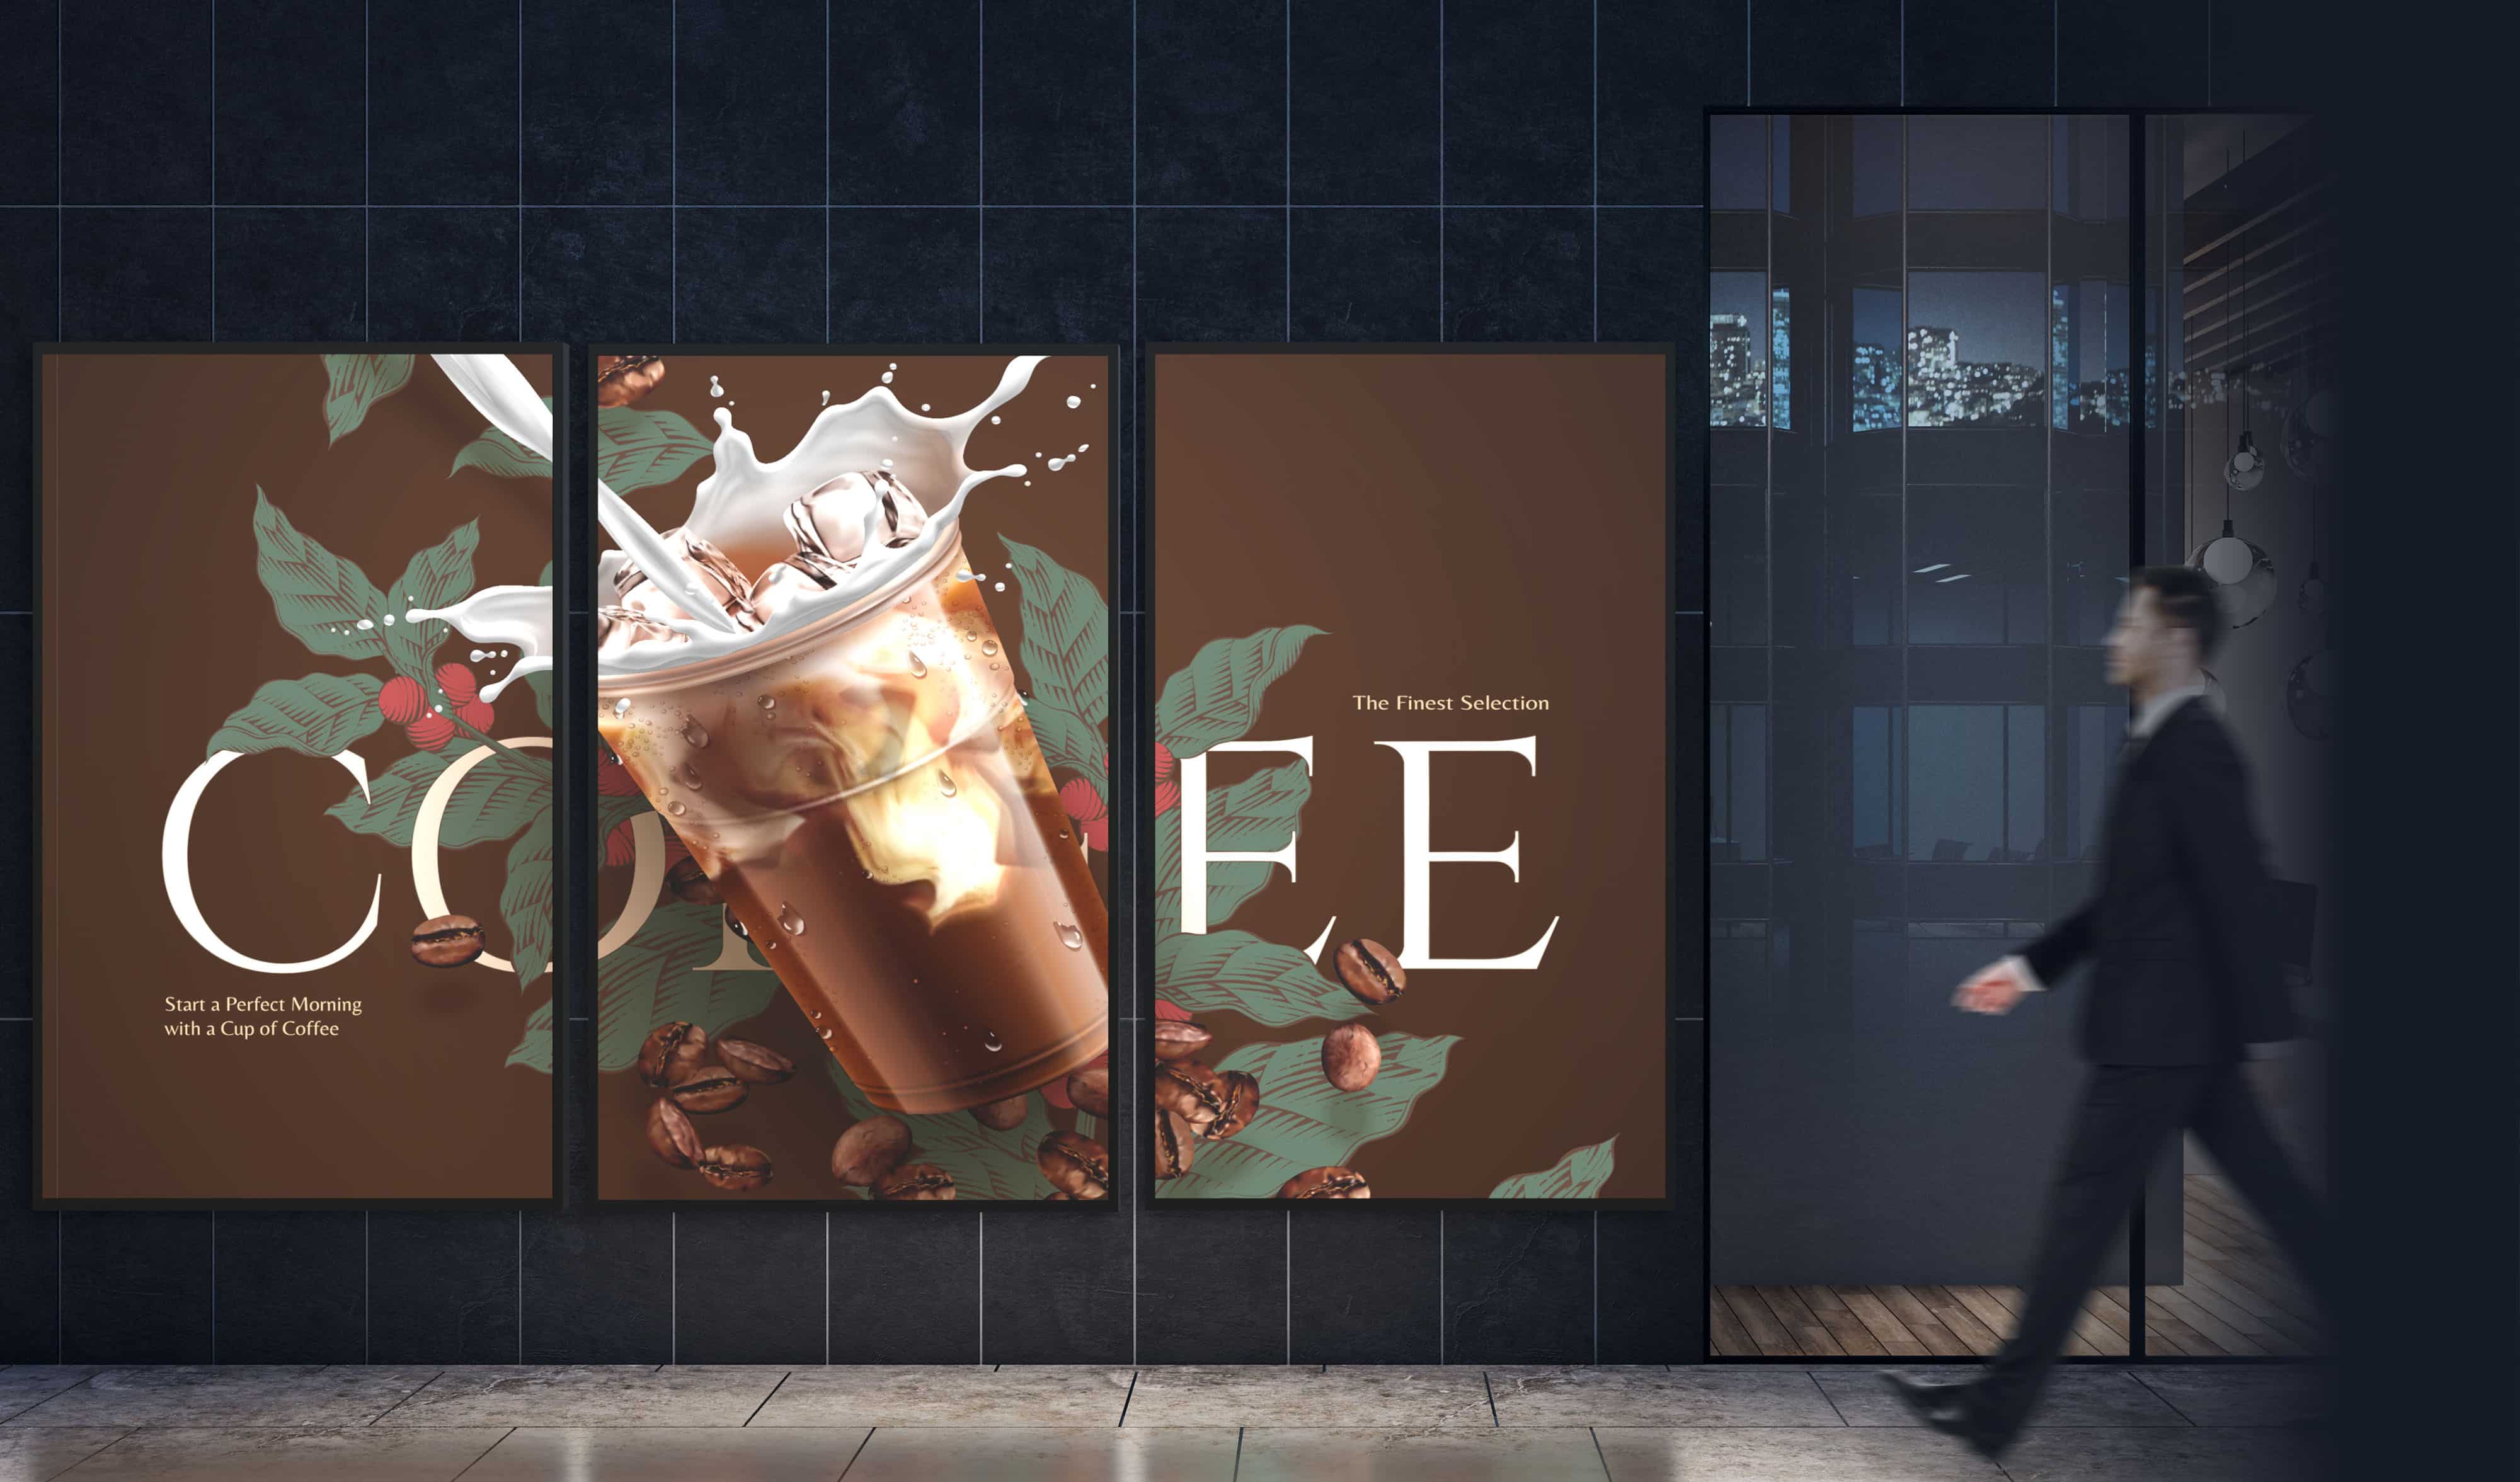 Un homme d'affaires passe devant une solution d'affichage dynamique composée de trois écrans Série N qui affichent une seule publicité pour une boisson à base de café sur les trois écrans.